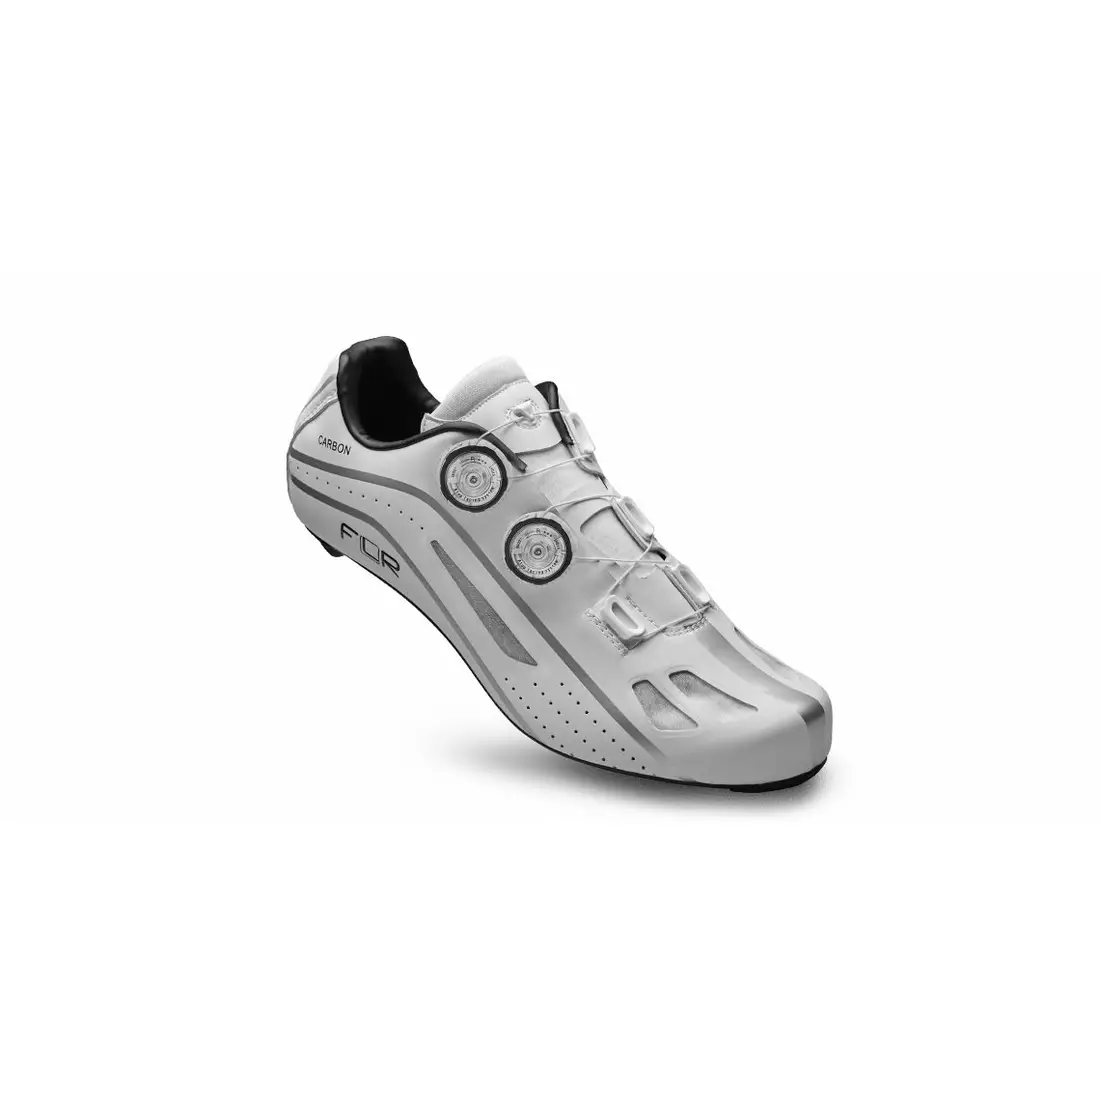 FLR F-XX pantofi de ciclism rutier, full carbon, alb